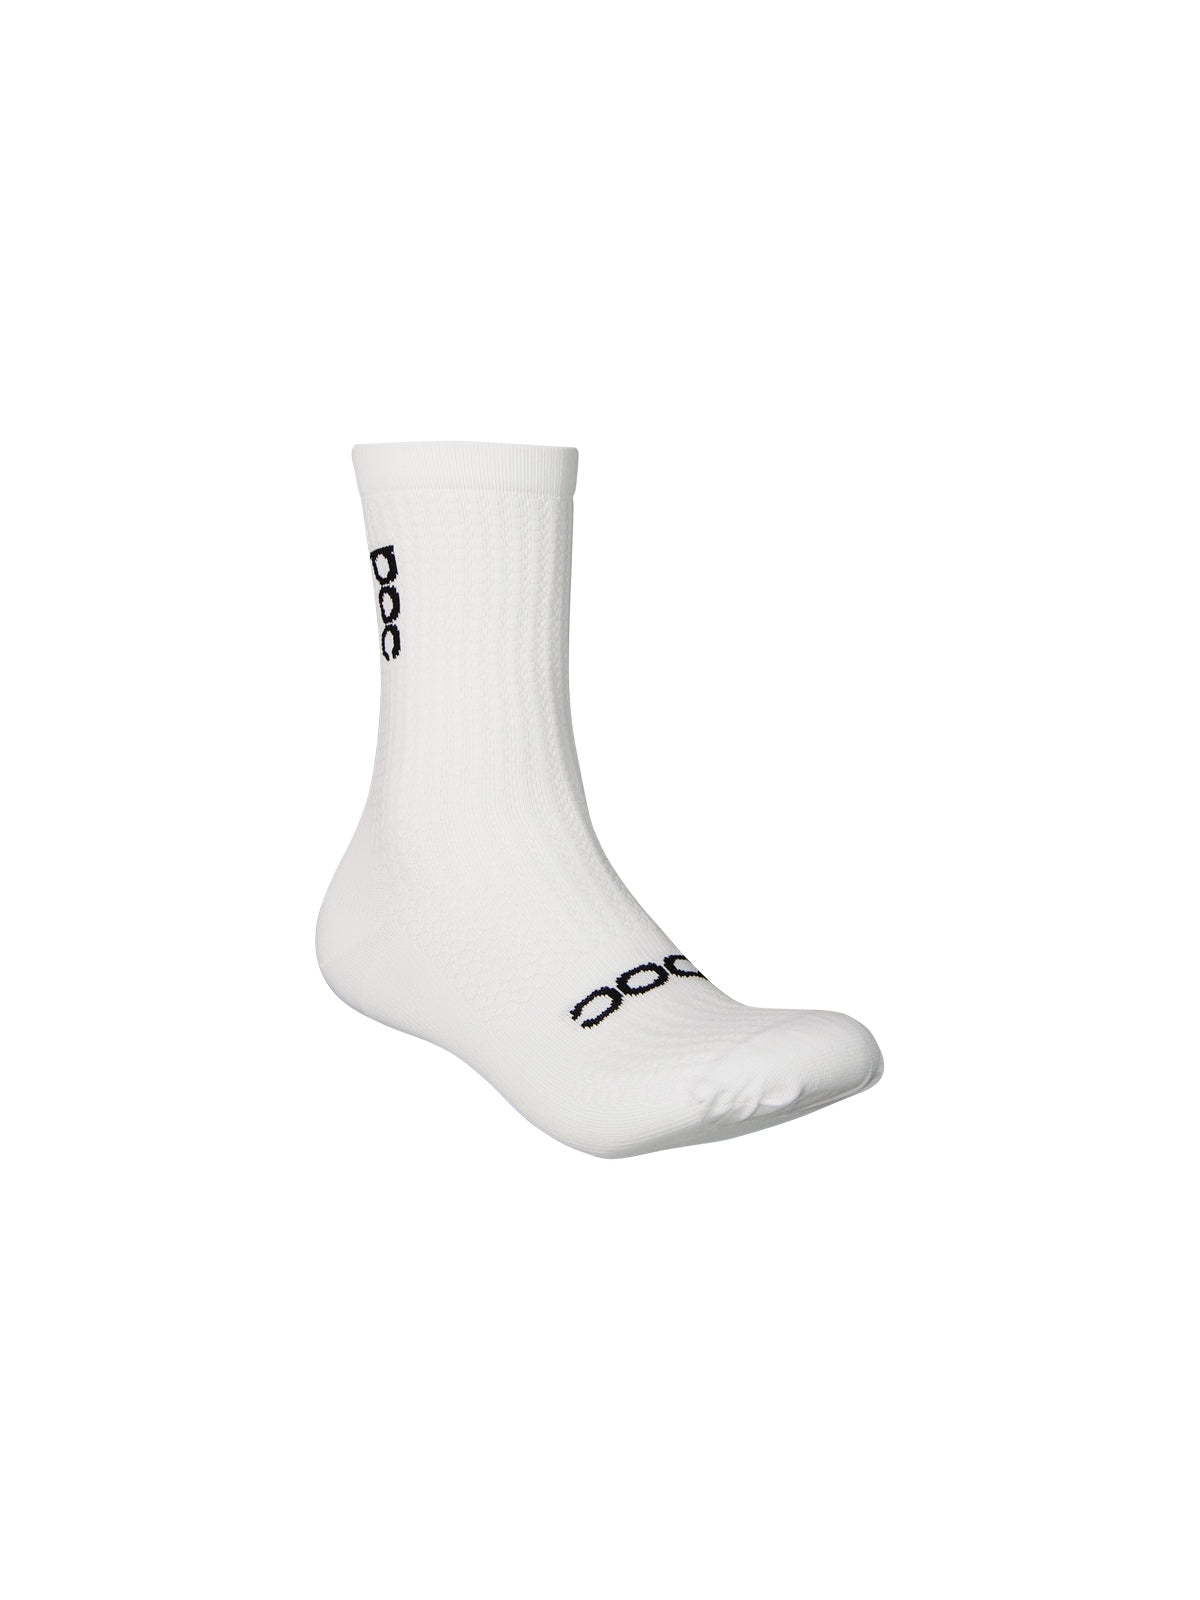 Skarpety rowerowe juniorskie POC Y's Essential Road Sock white